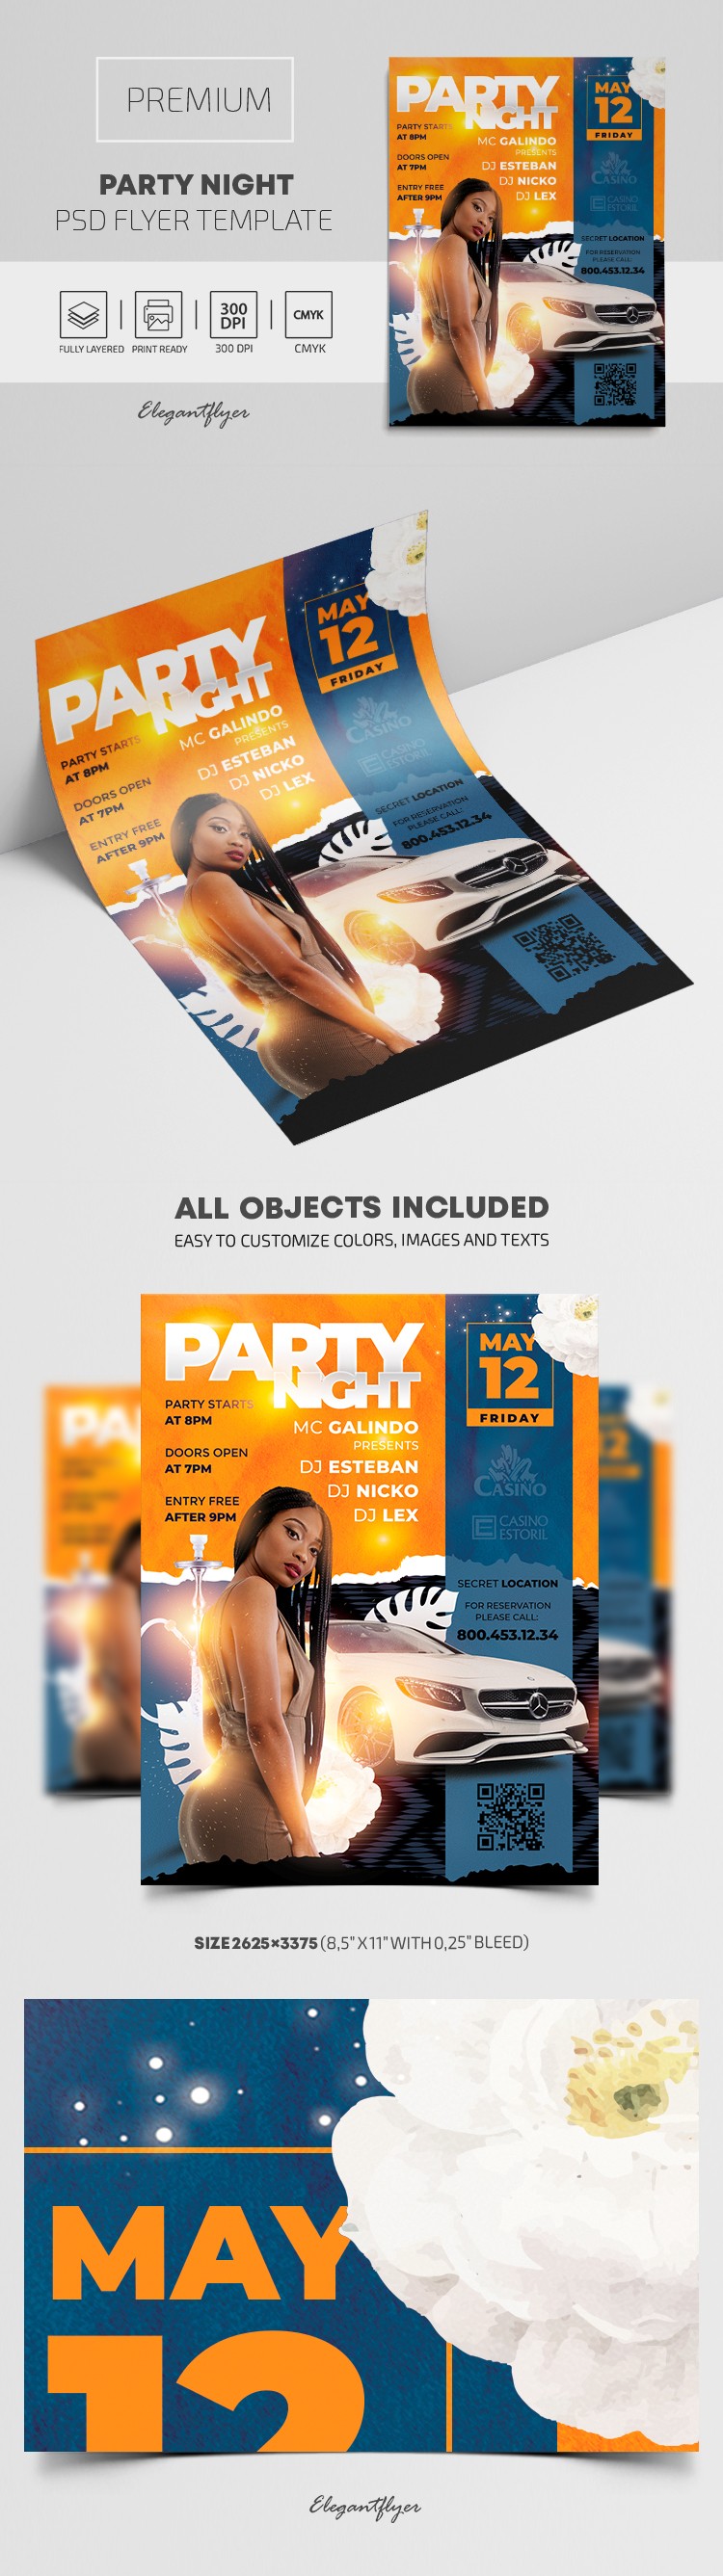 Party Night Flyer by ElegantFlyer